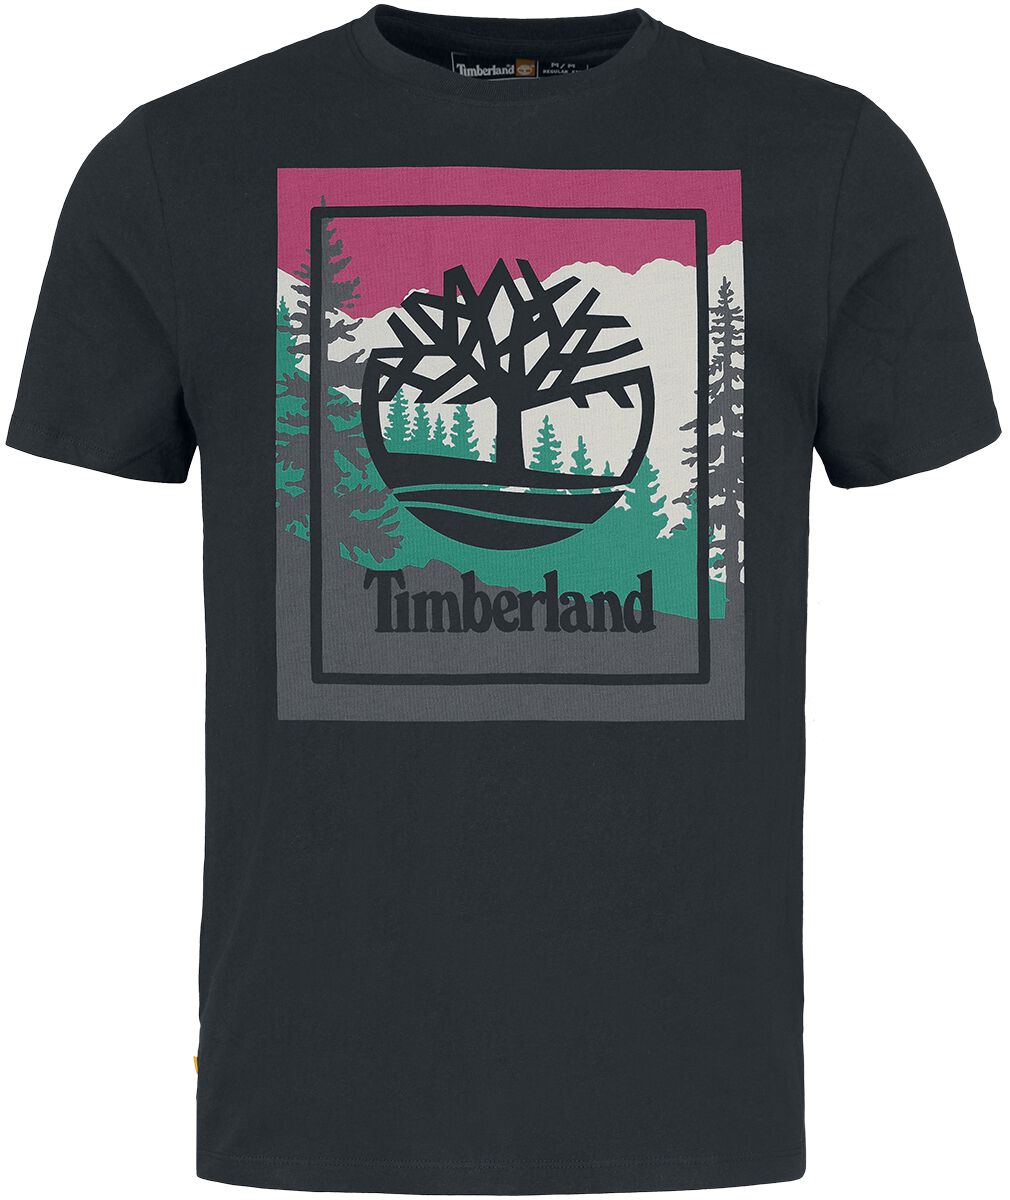 Timberland T-Shirt - Outdoor Inspired Graphic Tee - S bis L - für Männer - Größe L - schwarz